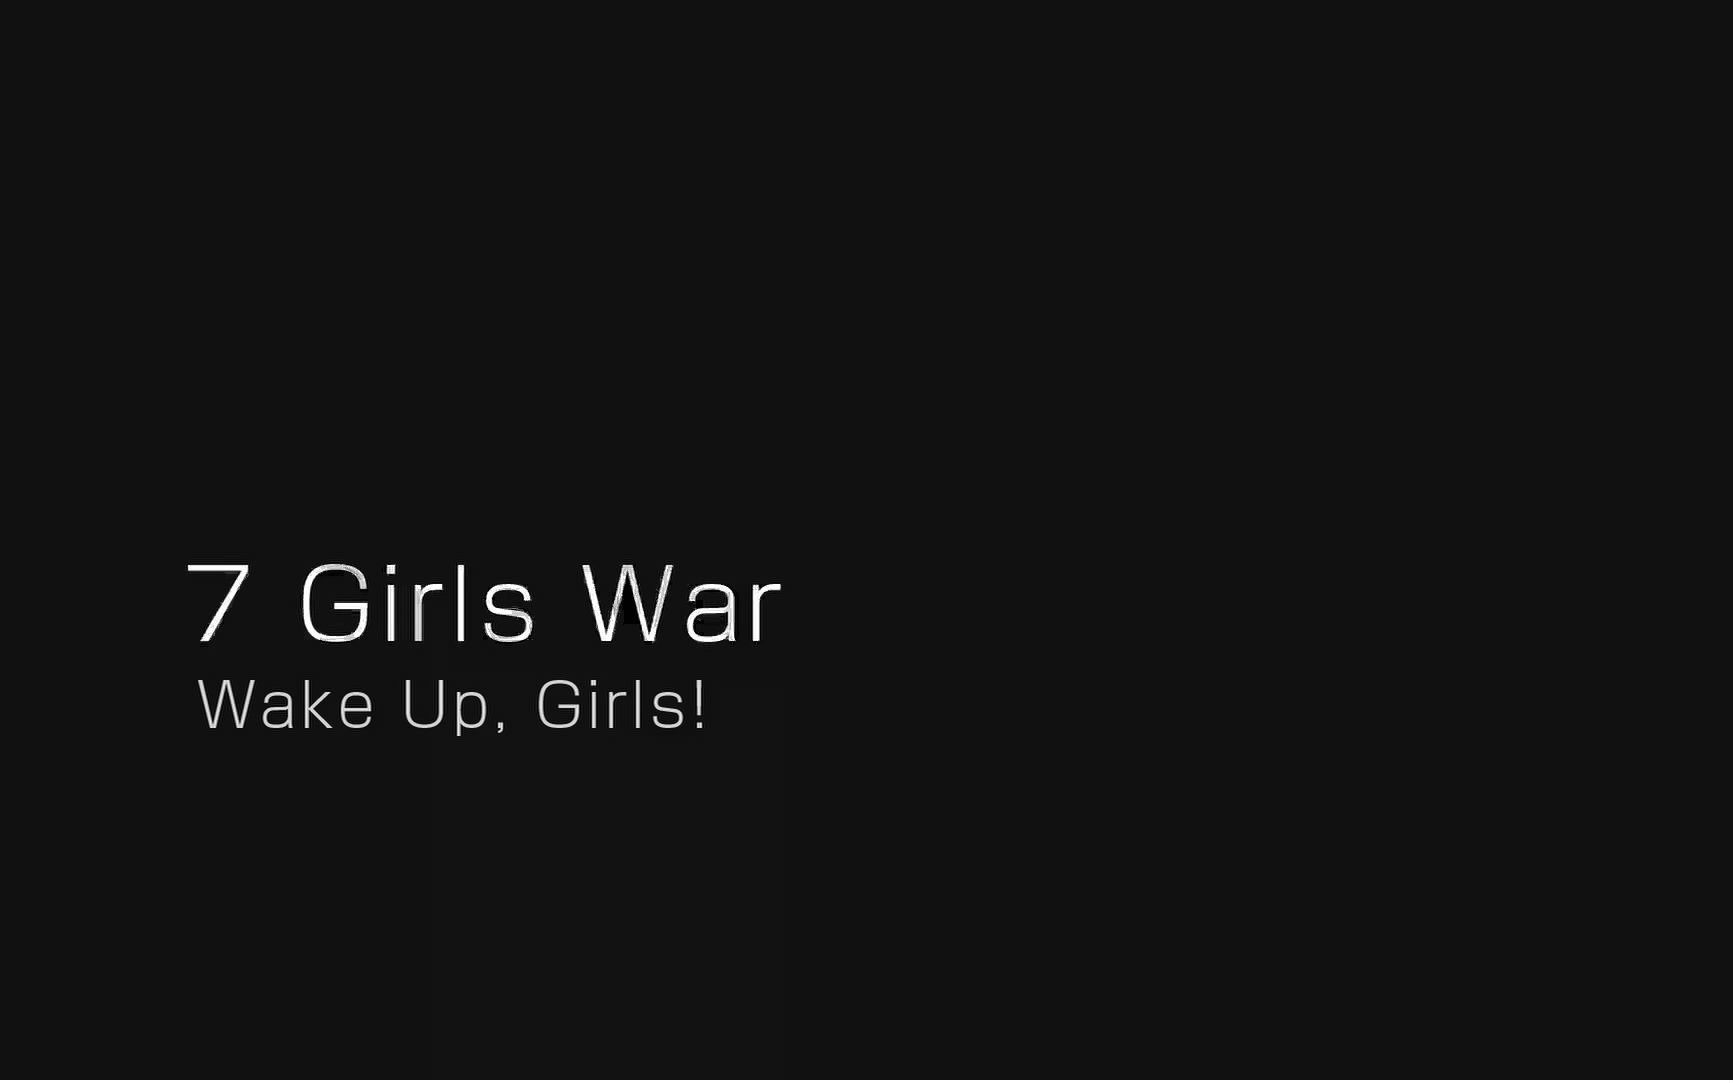 Wake Up Girls 7 Girls War 1080p 哔哩哔哩 つロ干杯 Bilibili